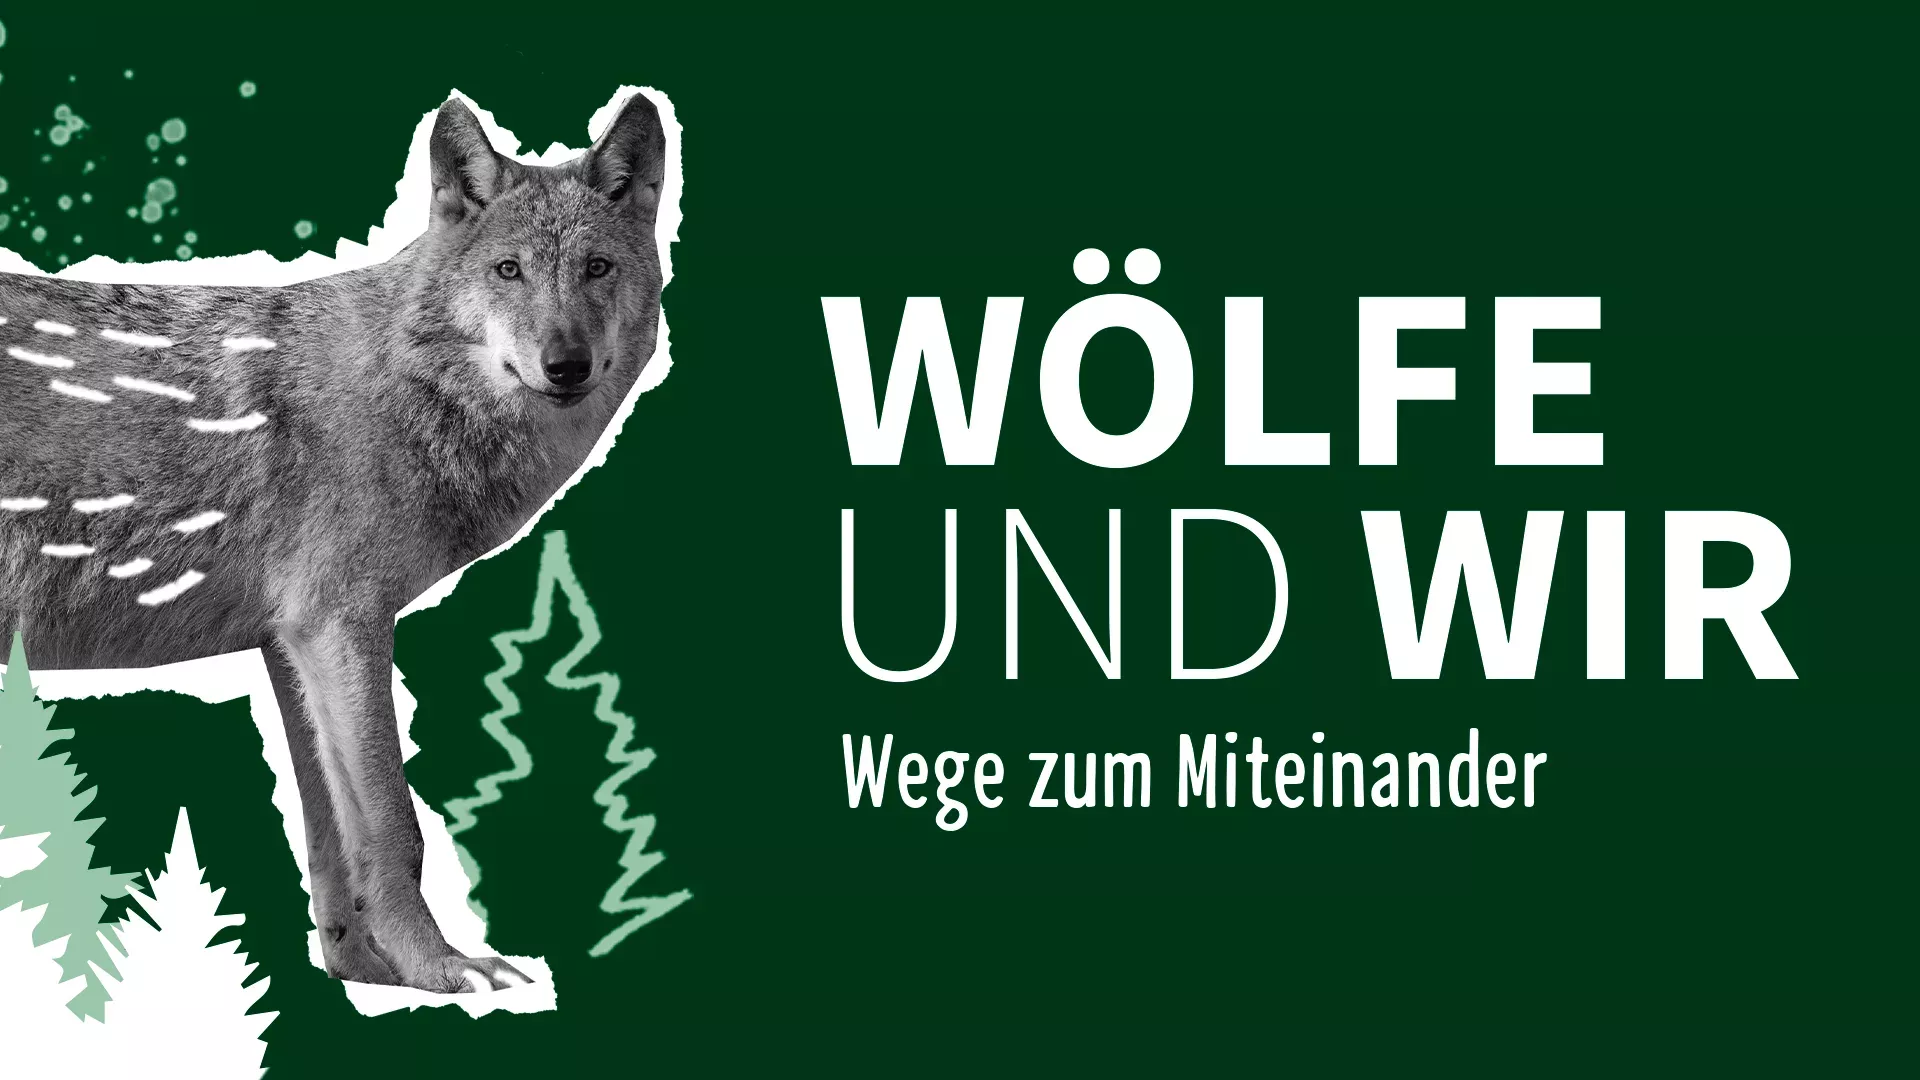 Referenzen NABU Wolf | Slogan: Wölfe und Wir